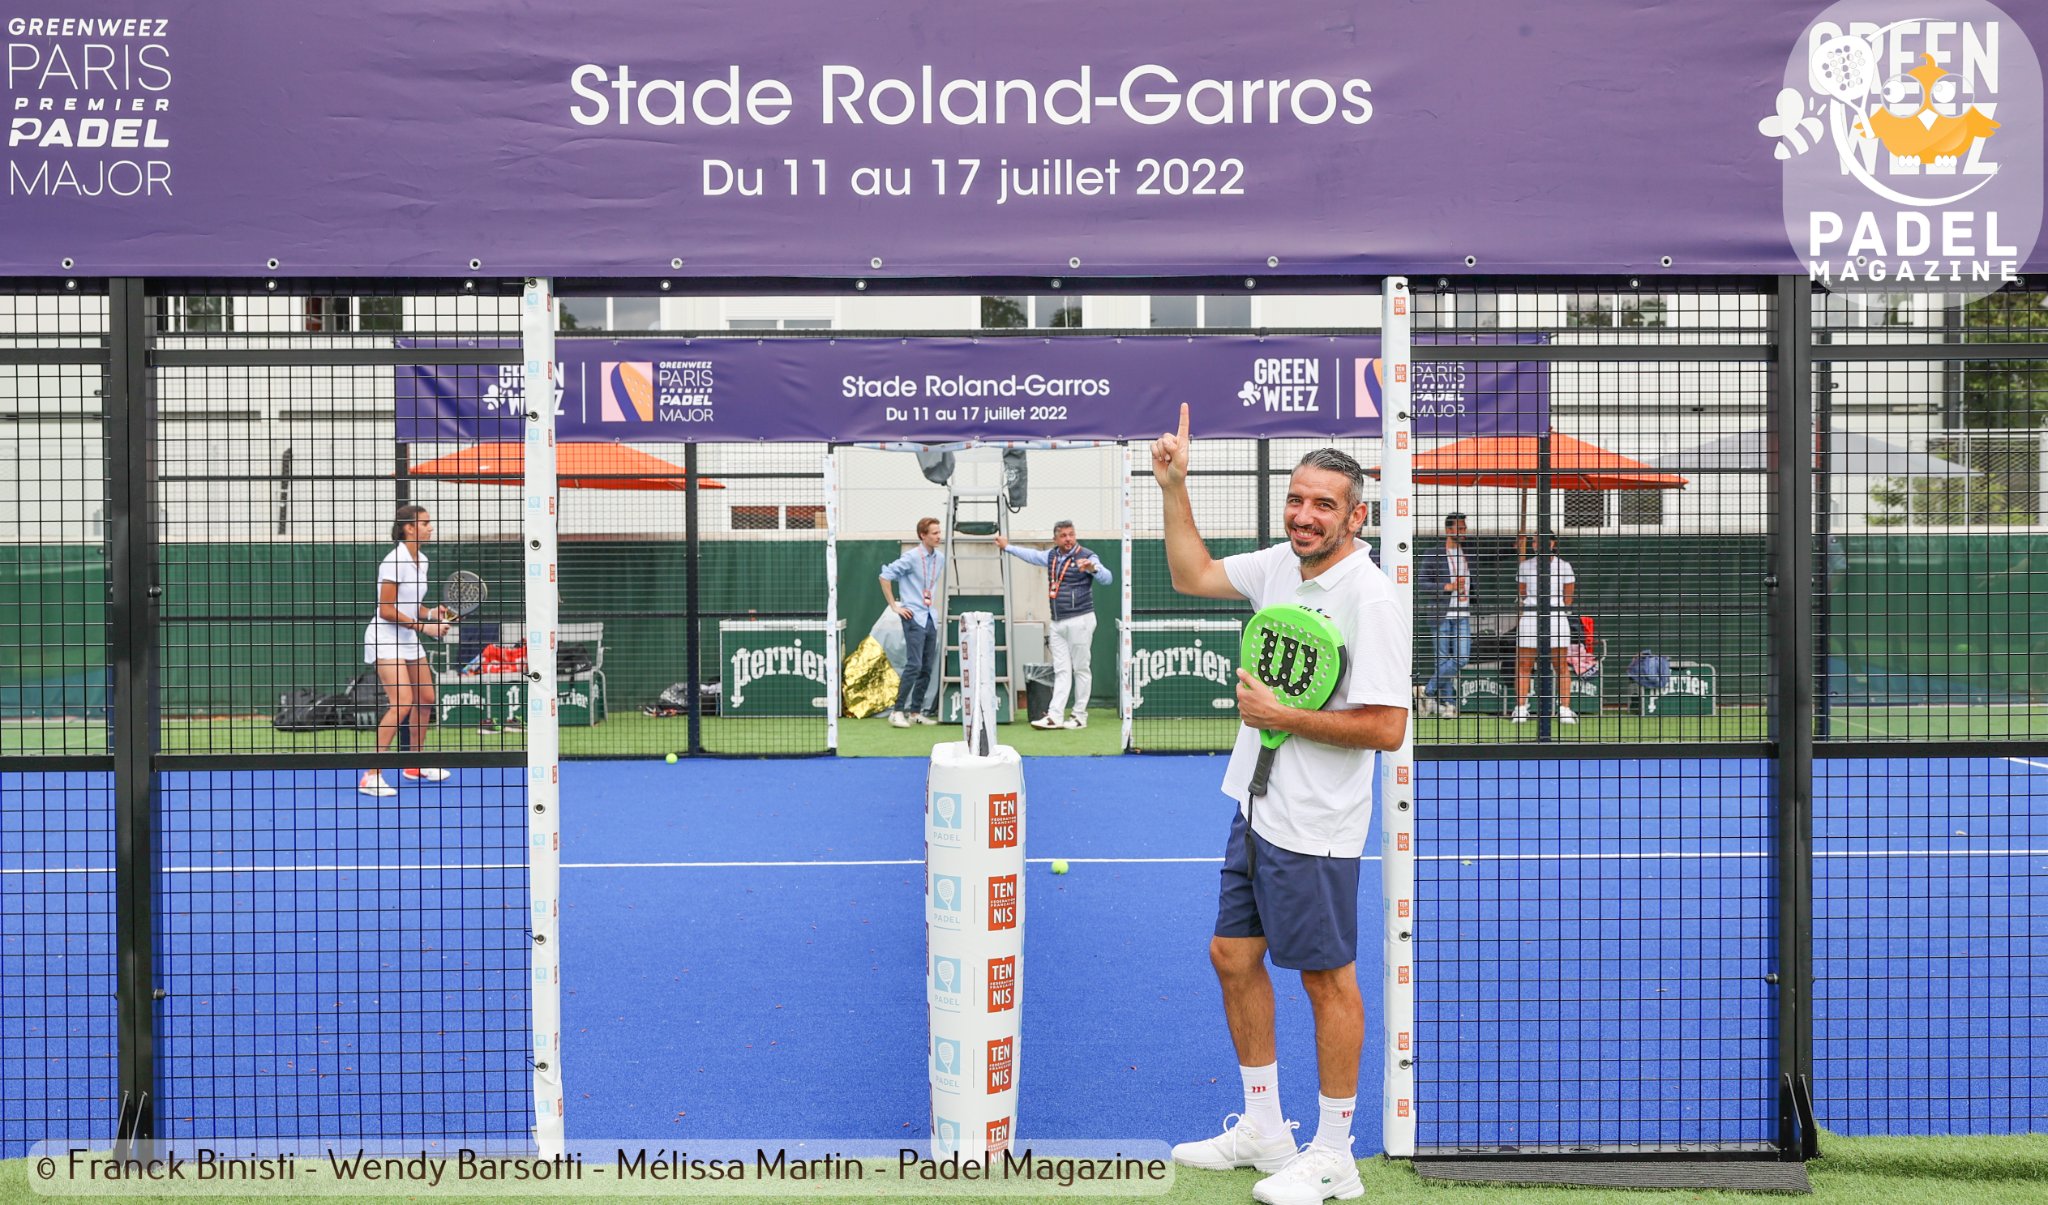 estadi de Roland Garros greenweez paris premier padel major